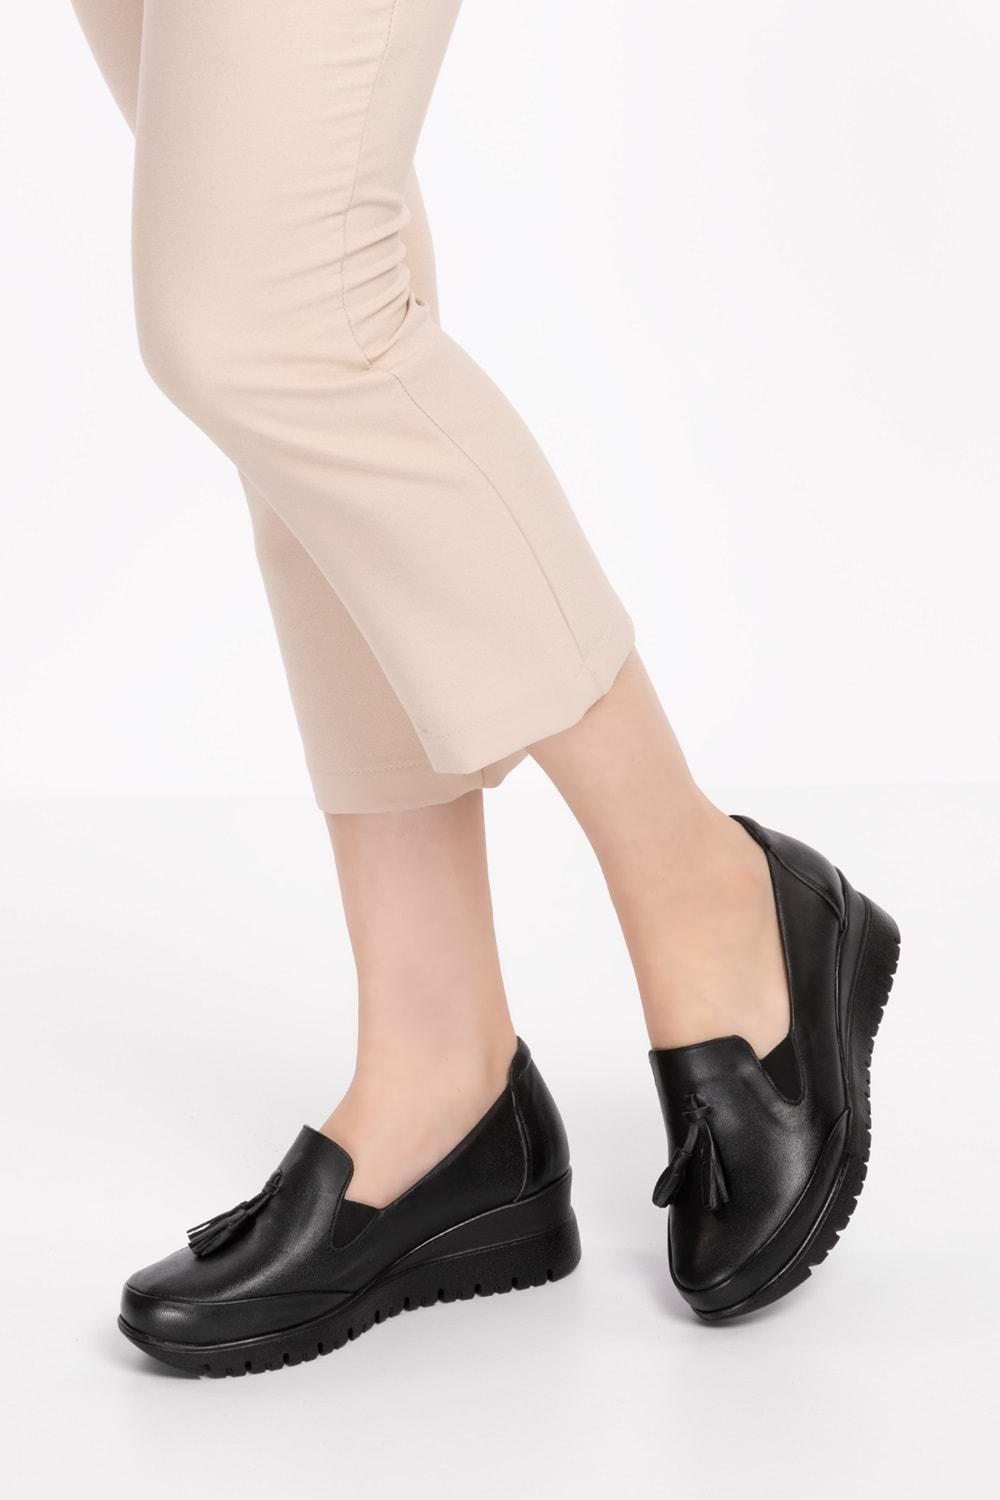 Gondol Kadın Hakiki Deri Anatomik Taban Dolgu Topuklu Günlük Ayakkabı pyt.6204 - Siyah - 37